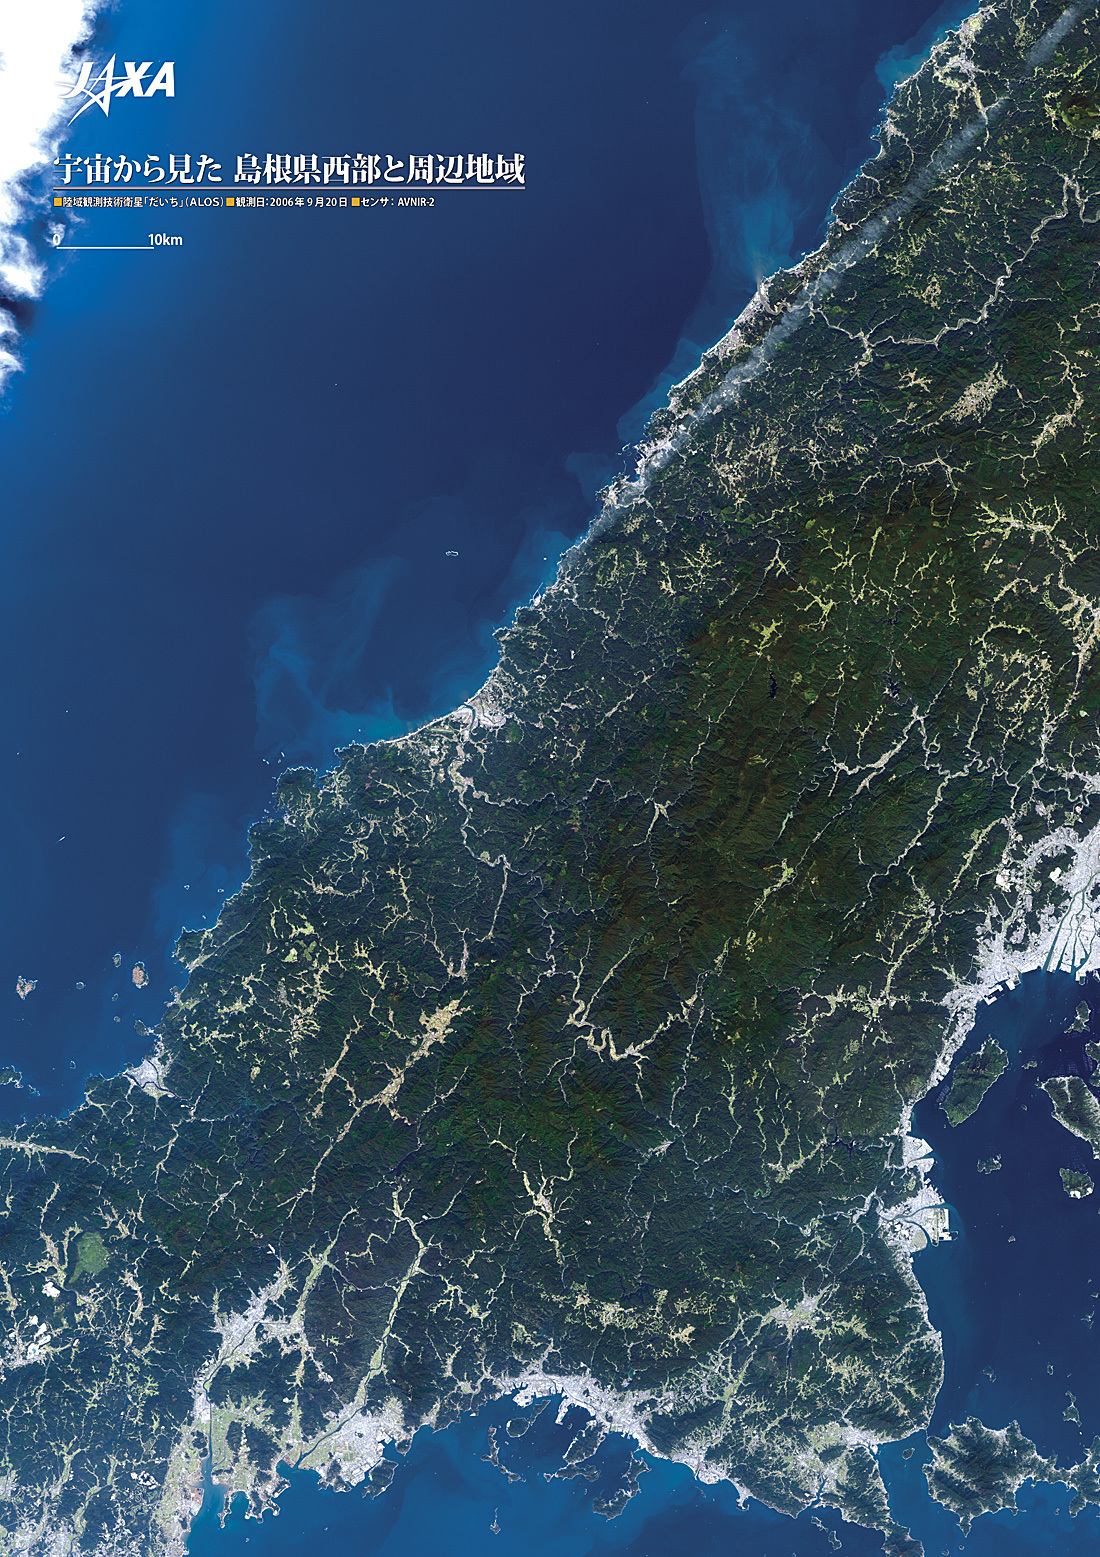 だいちから見た日本の都市 島根県西部と周辺地域:衛星画像（ポスター仕上げ）